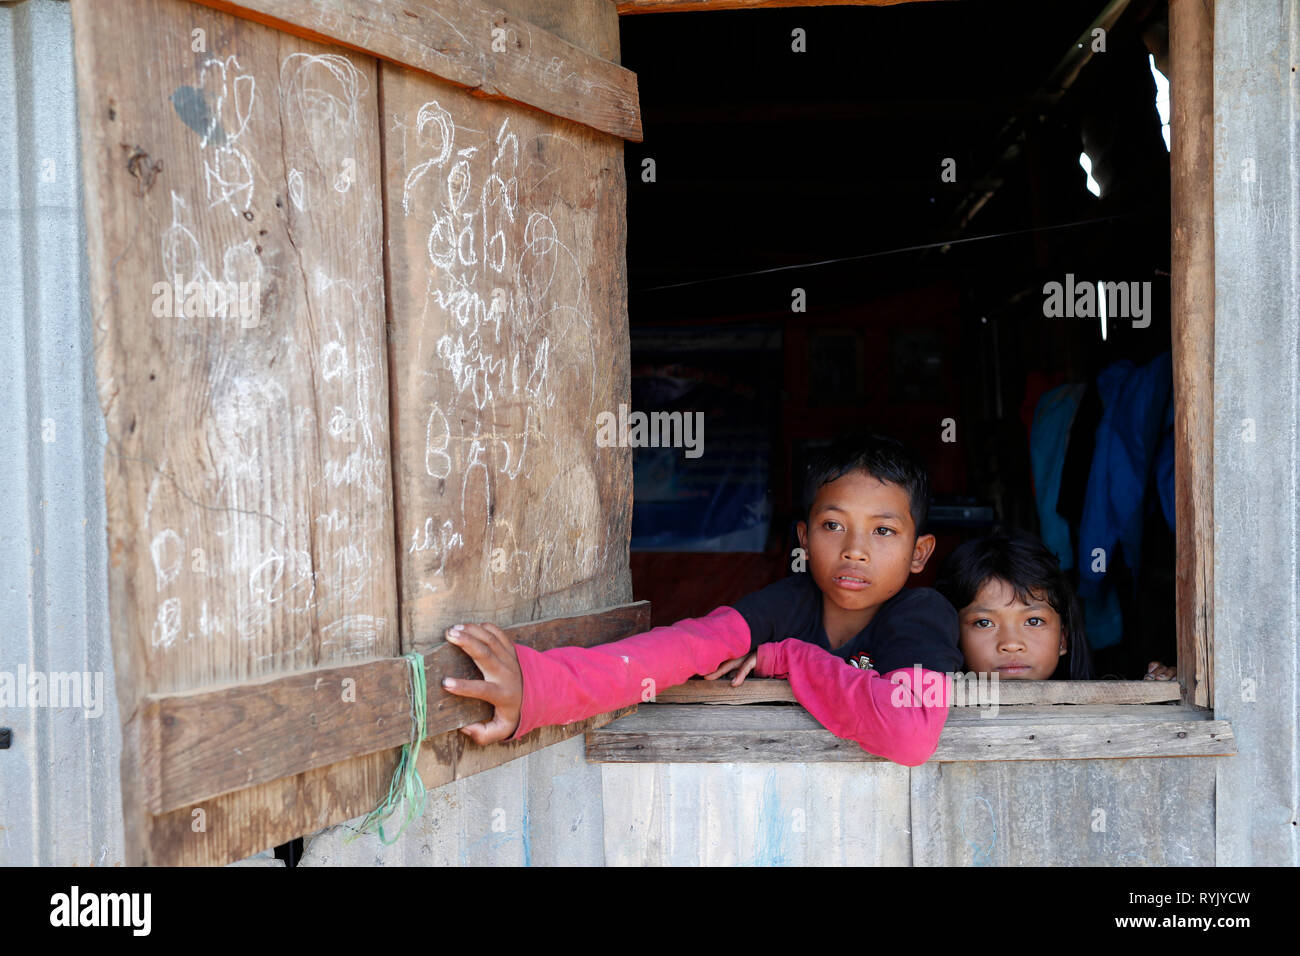 Schlechte vietnamesische Familie leben in einer kleinen Baracke besteht aus Schrott. Dalat. Vietnam. Stockfoto